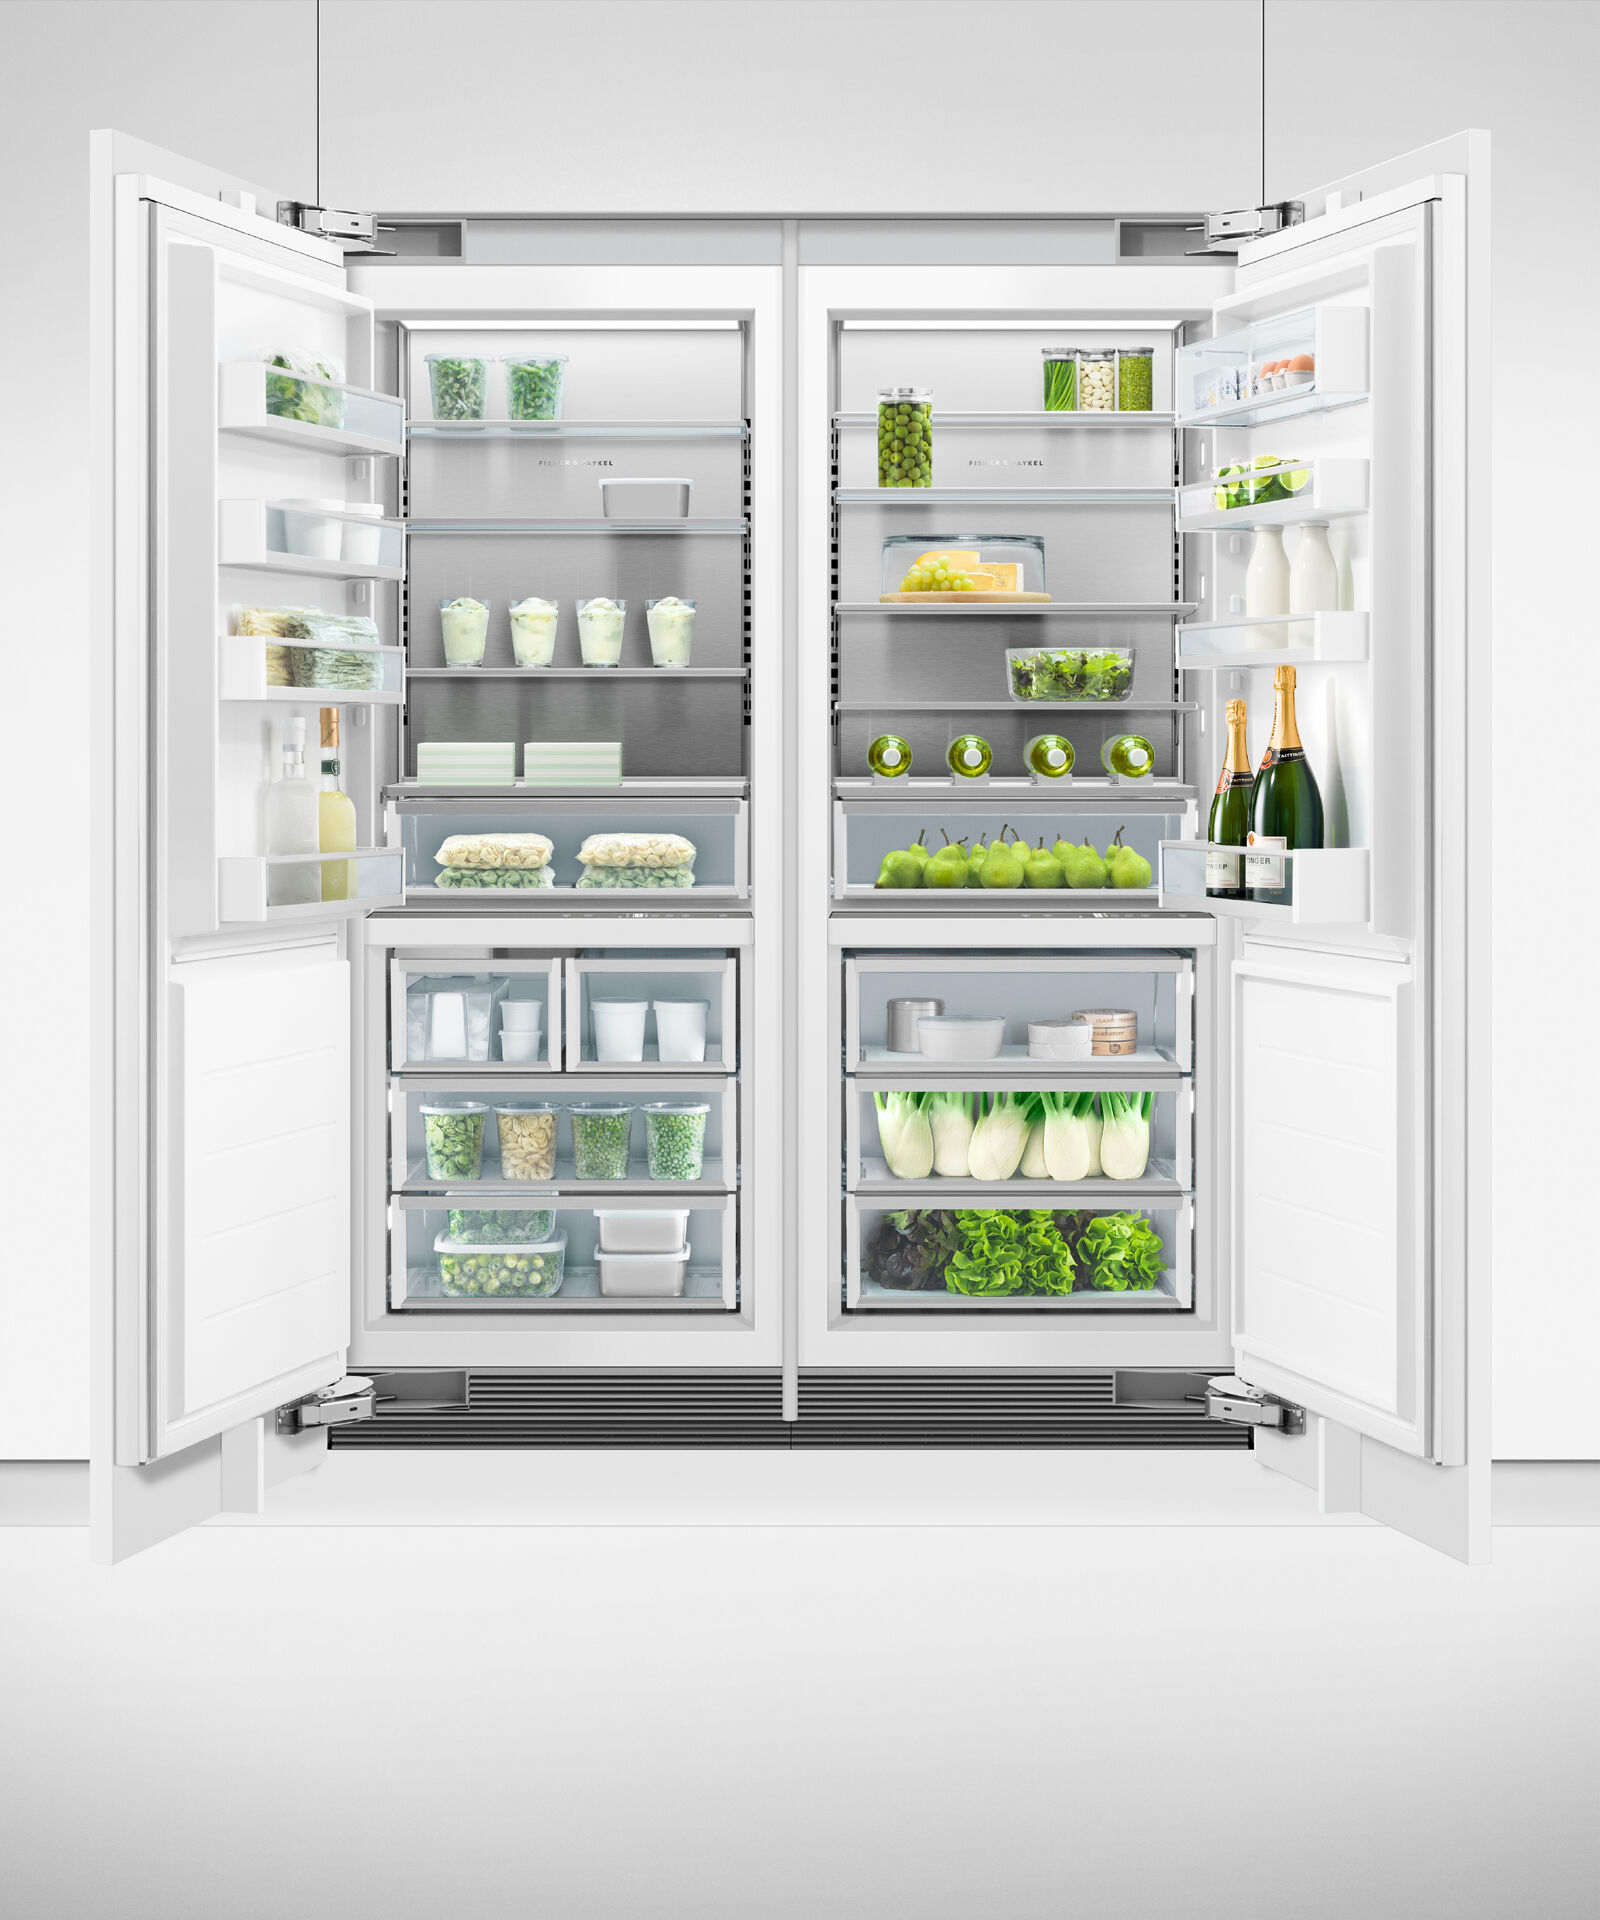 嵌入式立式冷凍櫃, 76cm, 自動製冰 gallery image 16.0